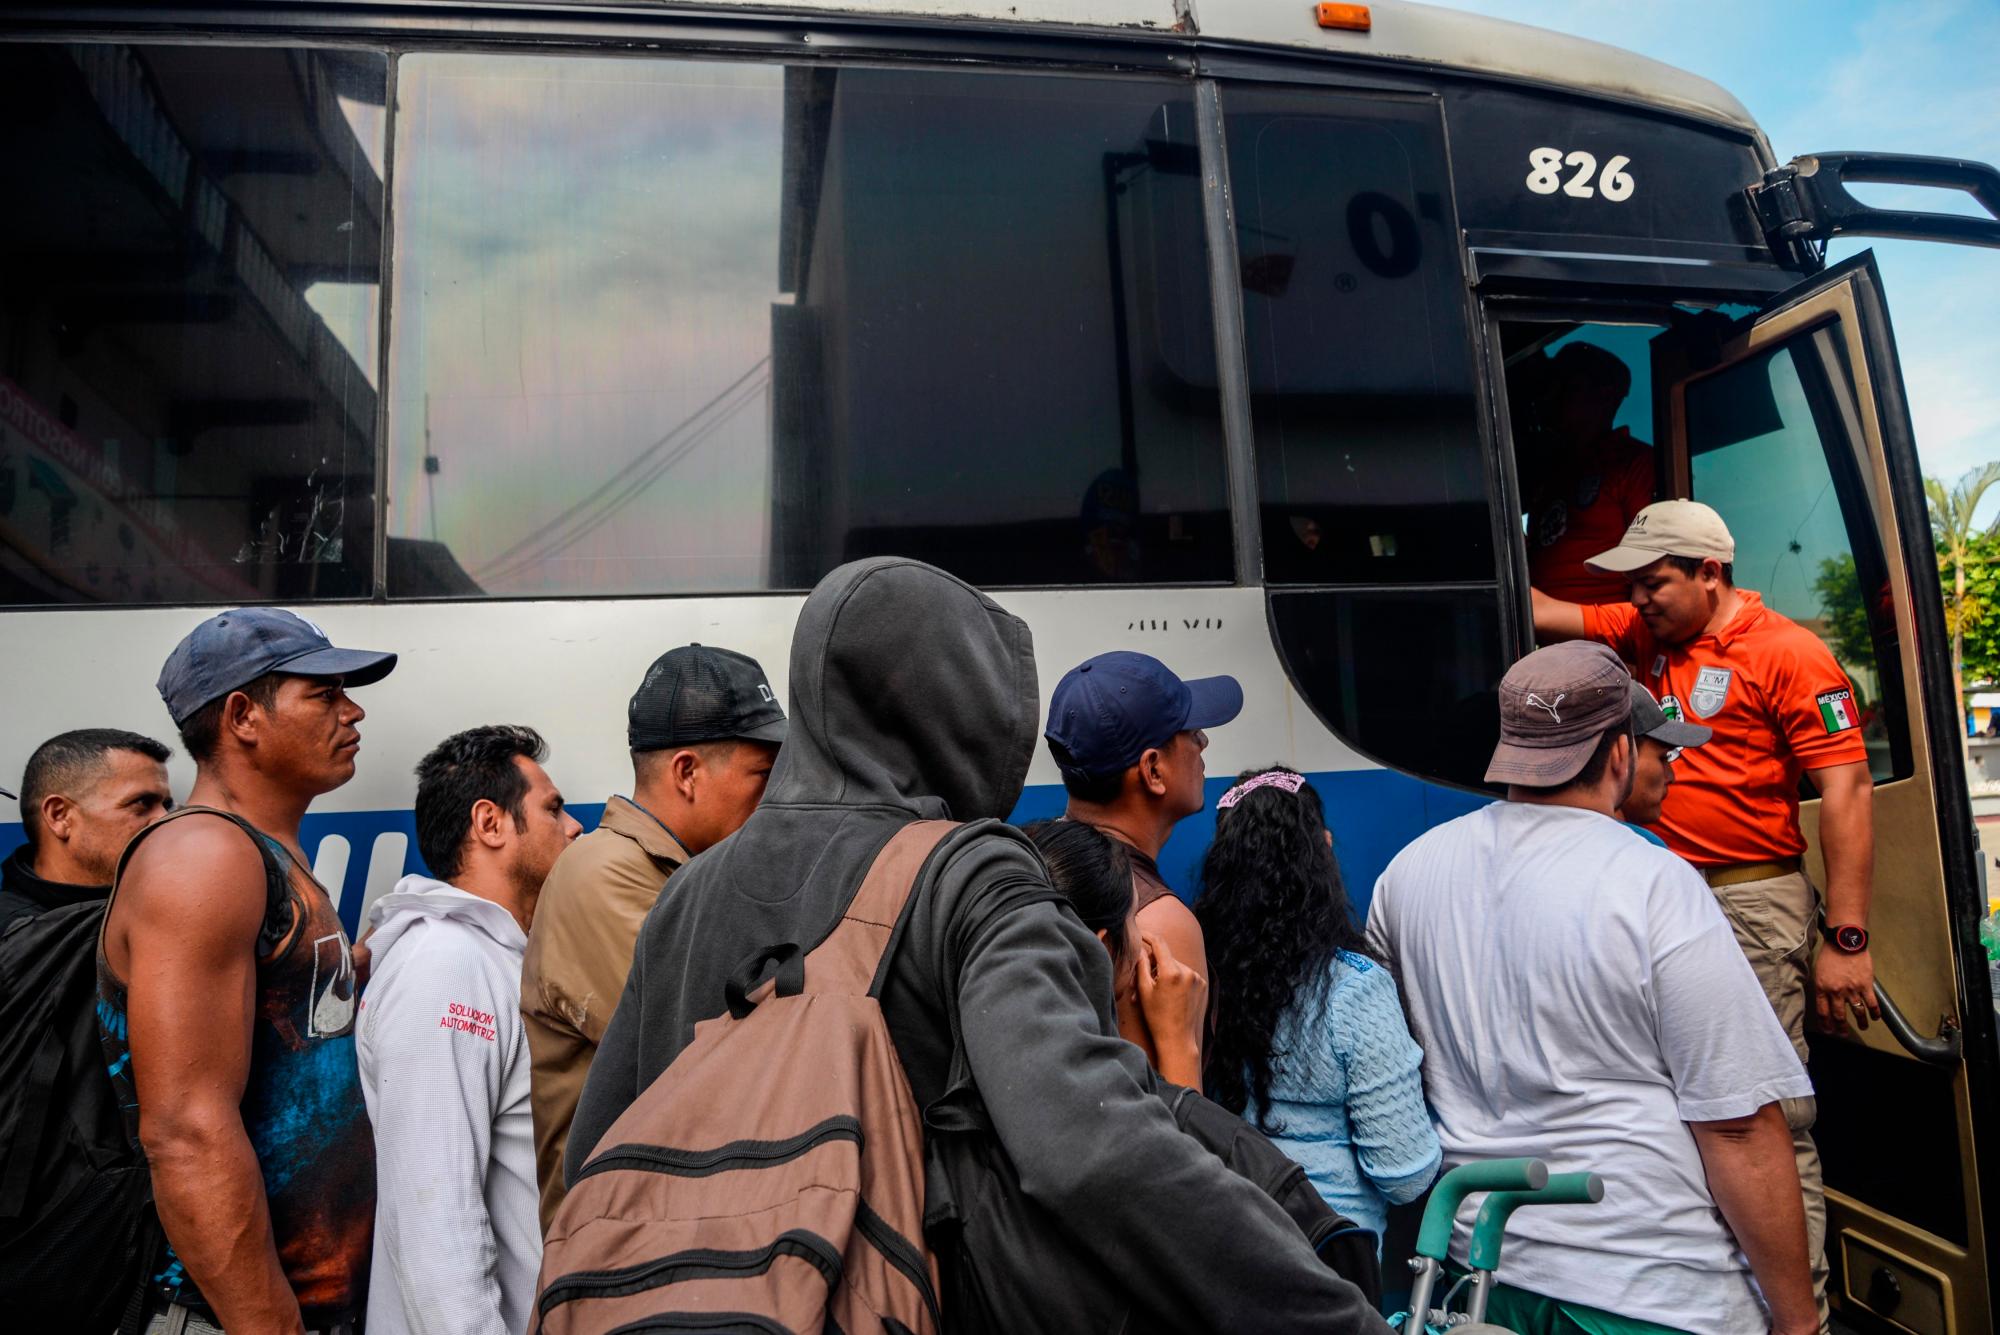  Migrantes hondureños suben a autobuses que los trasladarán desde la ciudad de Tapachula a la fronteriza Ciudad Hidalgo (México). Los migrantes que se encontraba ya en Tapachula buscan acogerse al programa de registro de la tarjeta humanitaria, y regularizar su estancia legal en territorio mexicano, lo que les permitirá buscar trabajo o ir a la frontera e intentar inmigrar a Estados Unidos.